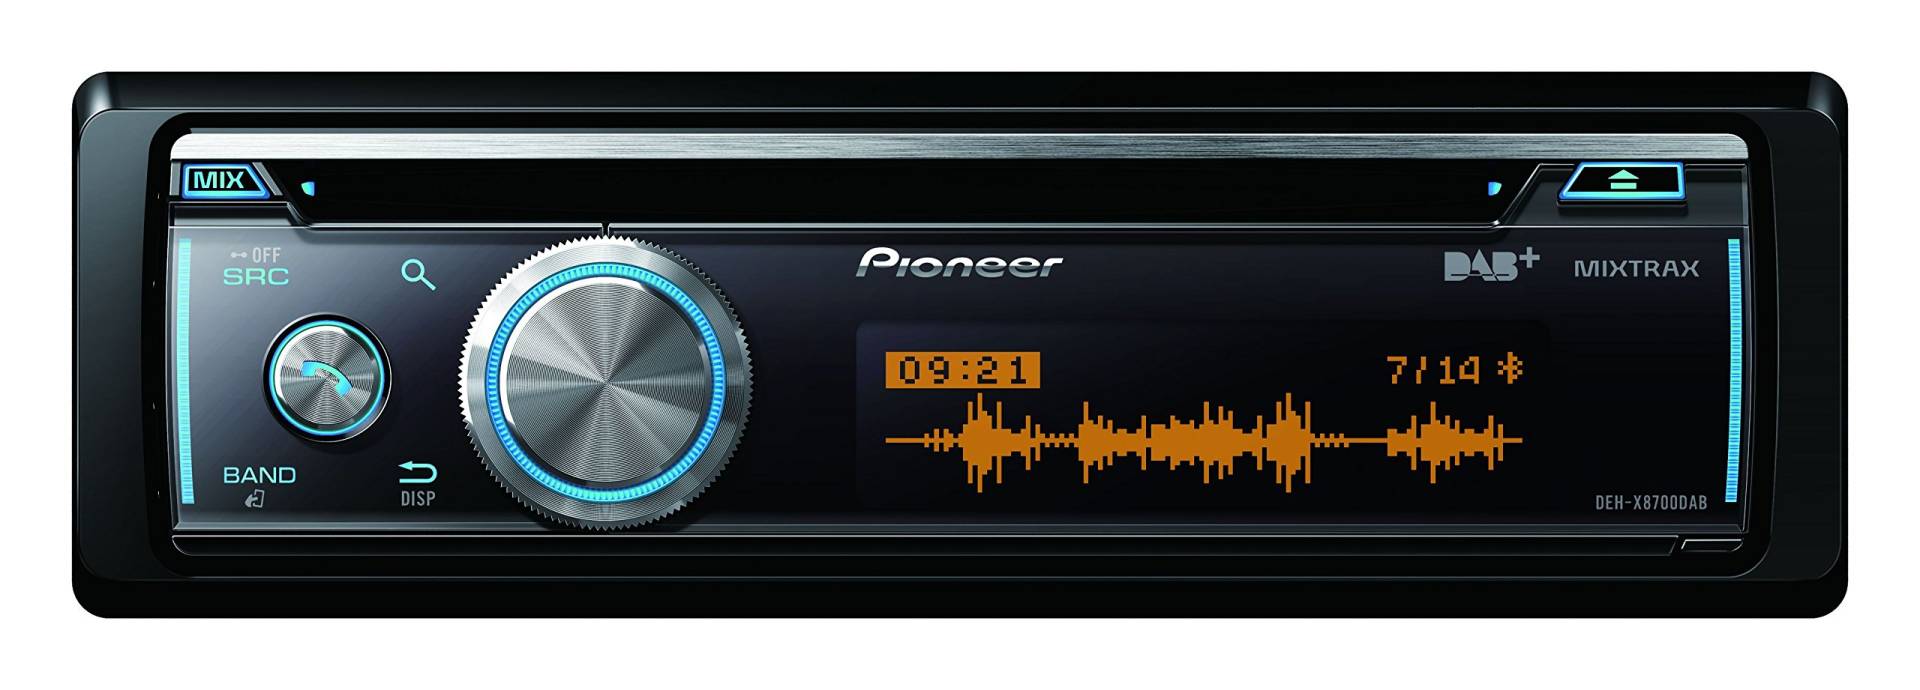 Pioneer DEH-X8700DAB , 1DIN Autoradio , CD-Tuner mit FM und DAB+ , Bluetooth , MP3 , USB und AUX-Eingang , RGB – Beleuchtung , Bluetooth Freisprecheinrichtung, Smart Sync App , 5-Band Equalizer von Pioneer